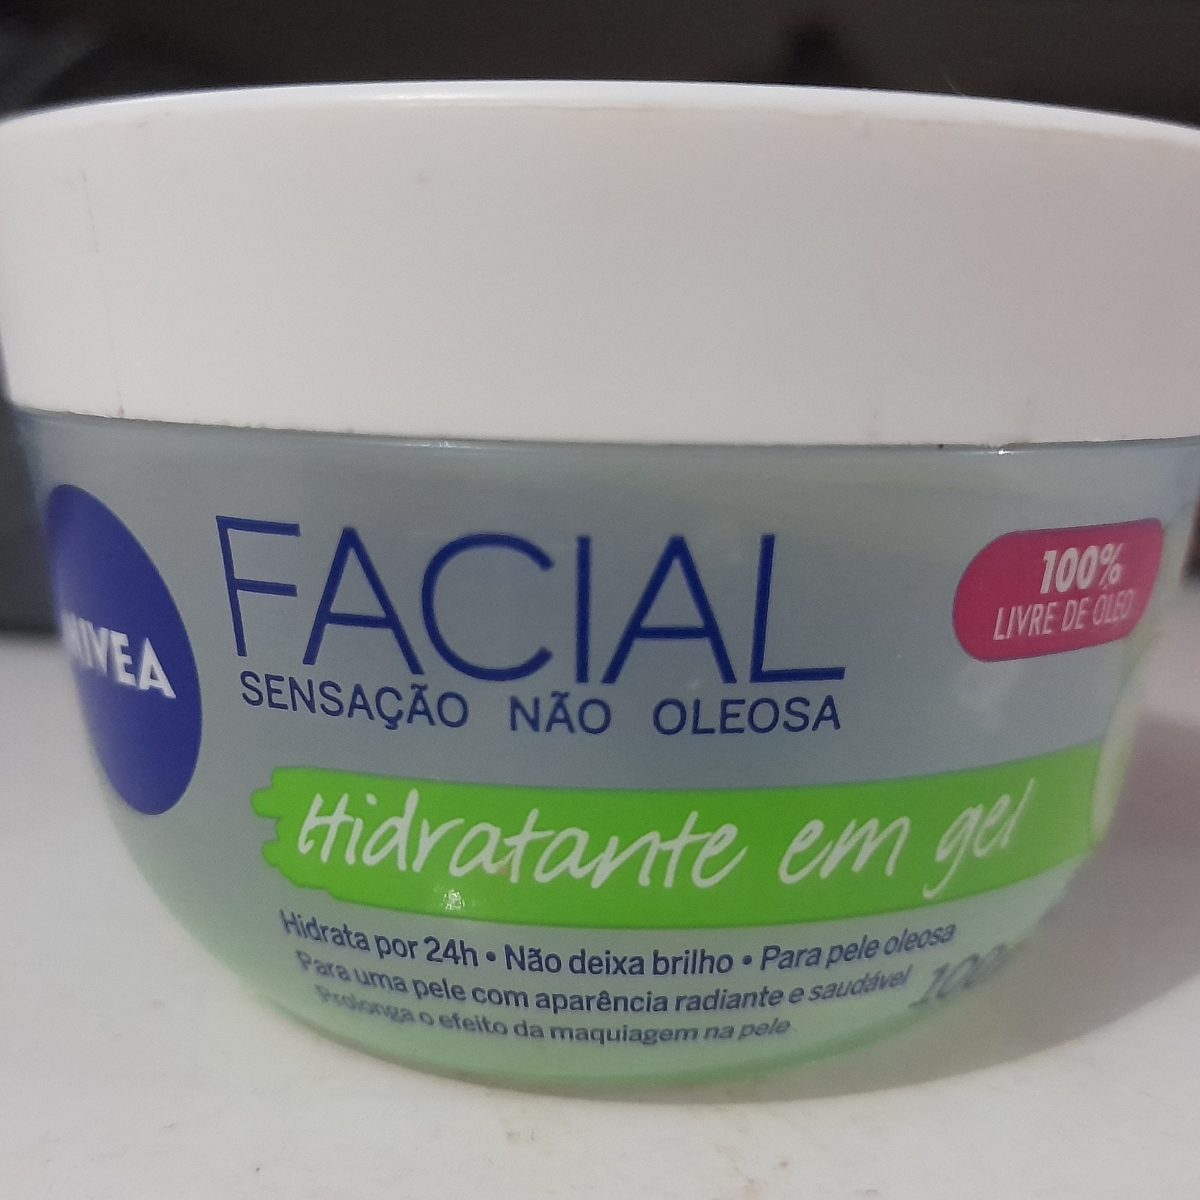 Nivea Facial hidratante em gel Review | abillion